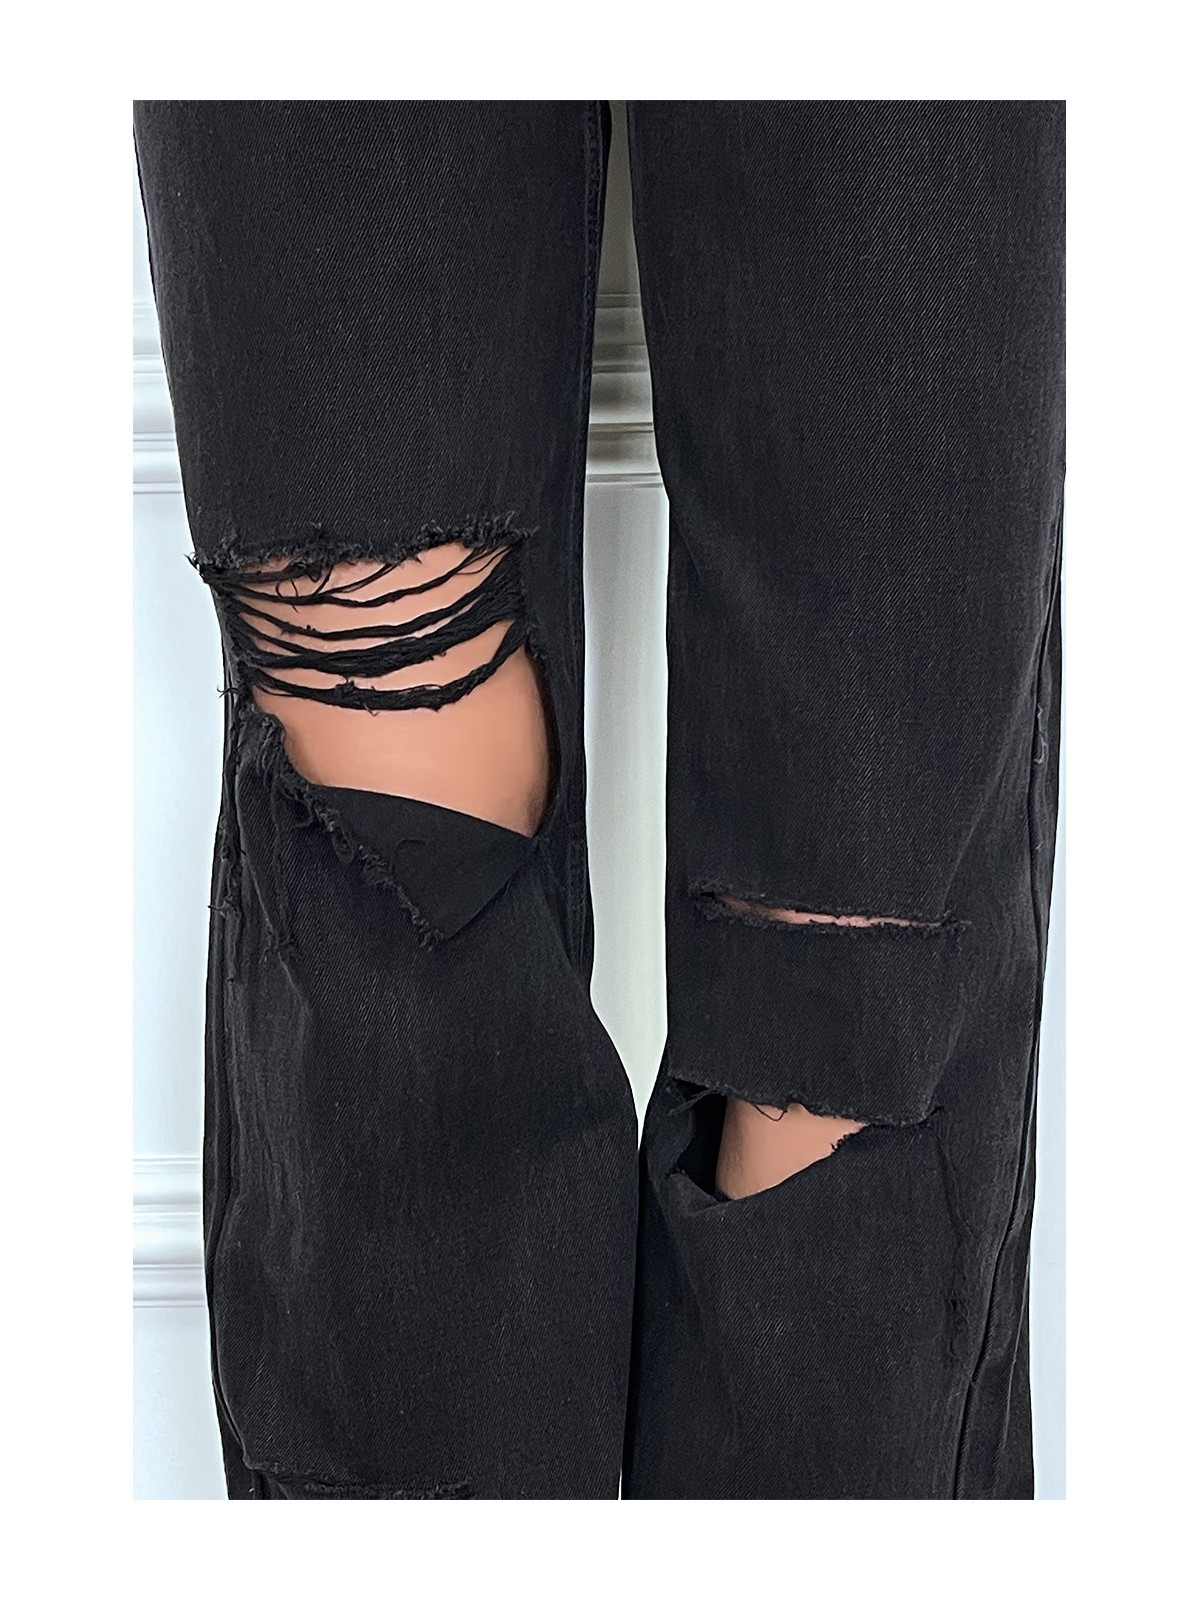 Jeans boot-cut noir taille haute déchiré aux genoux. Jeans hyper tendance 2021 instagram et TikTok - 9